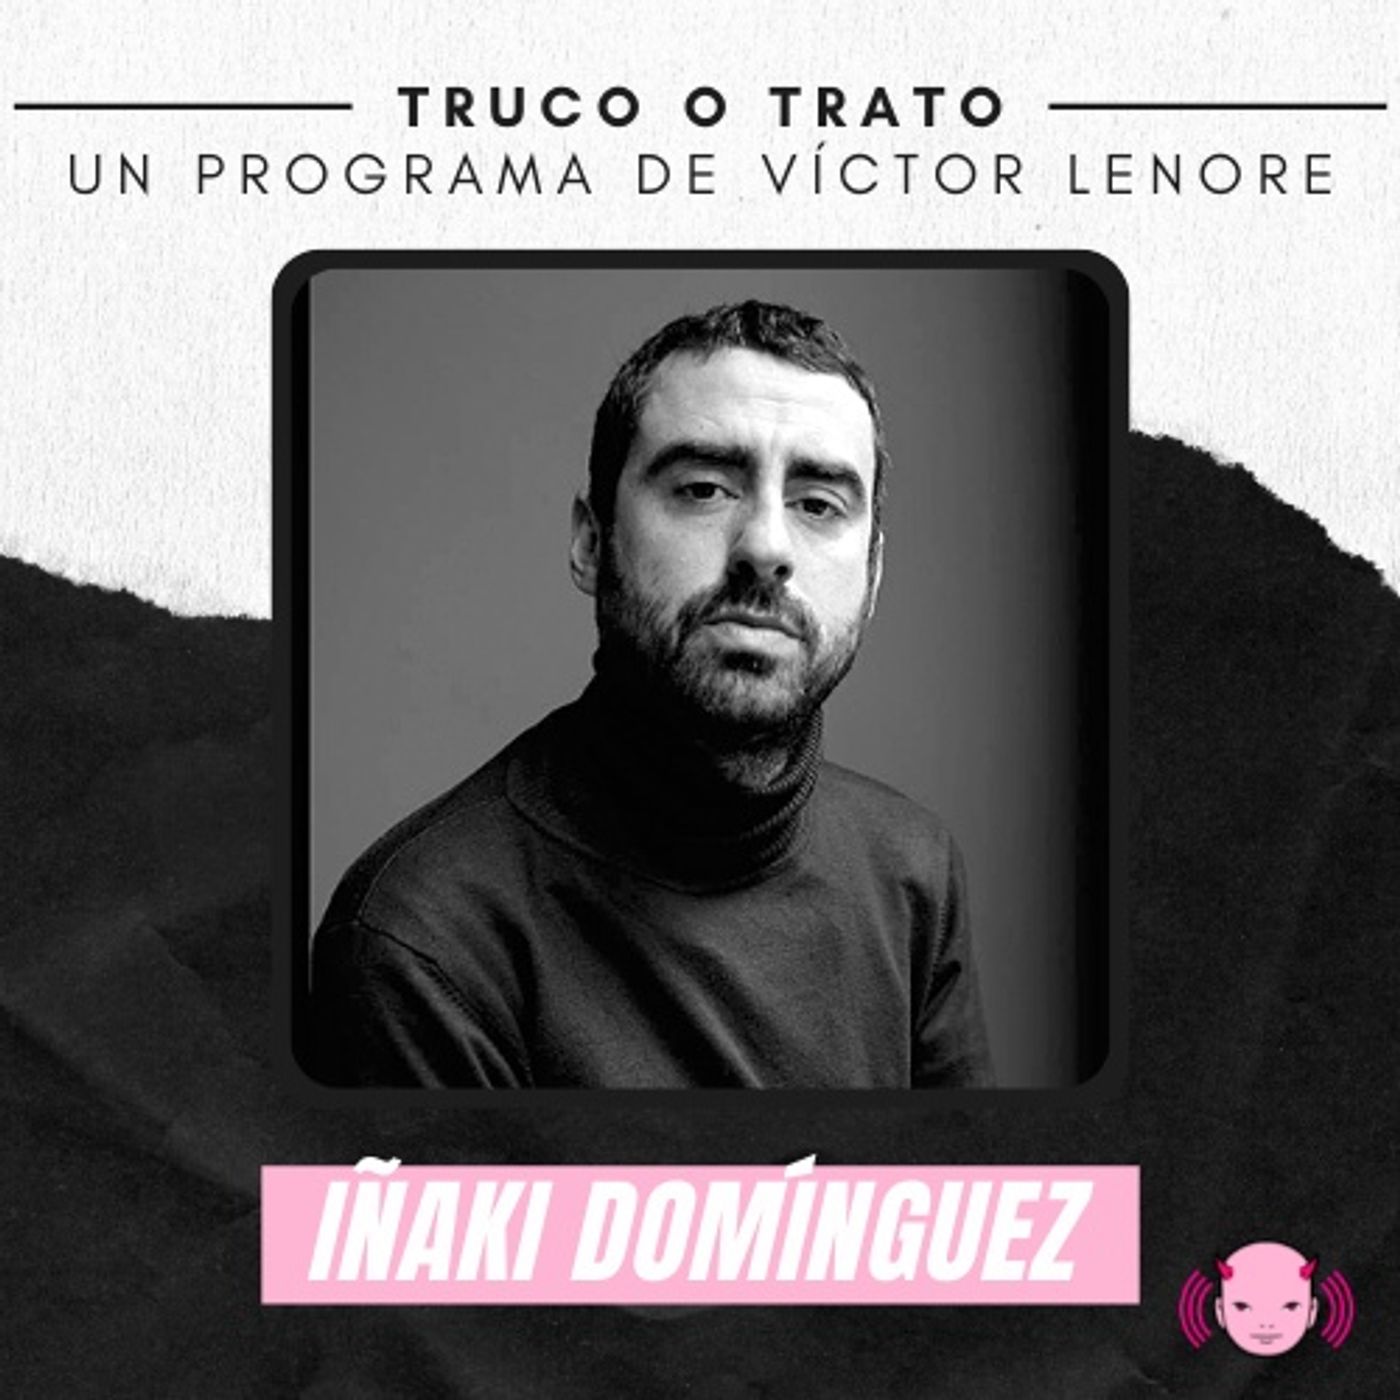 Truco o trato con Víctor Lenore #7: Iñaki Domínguez